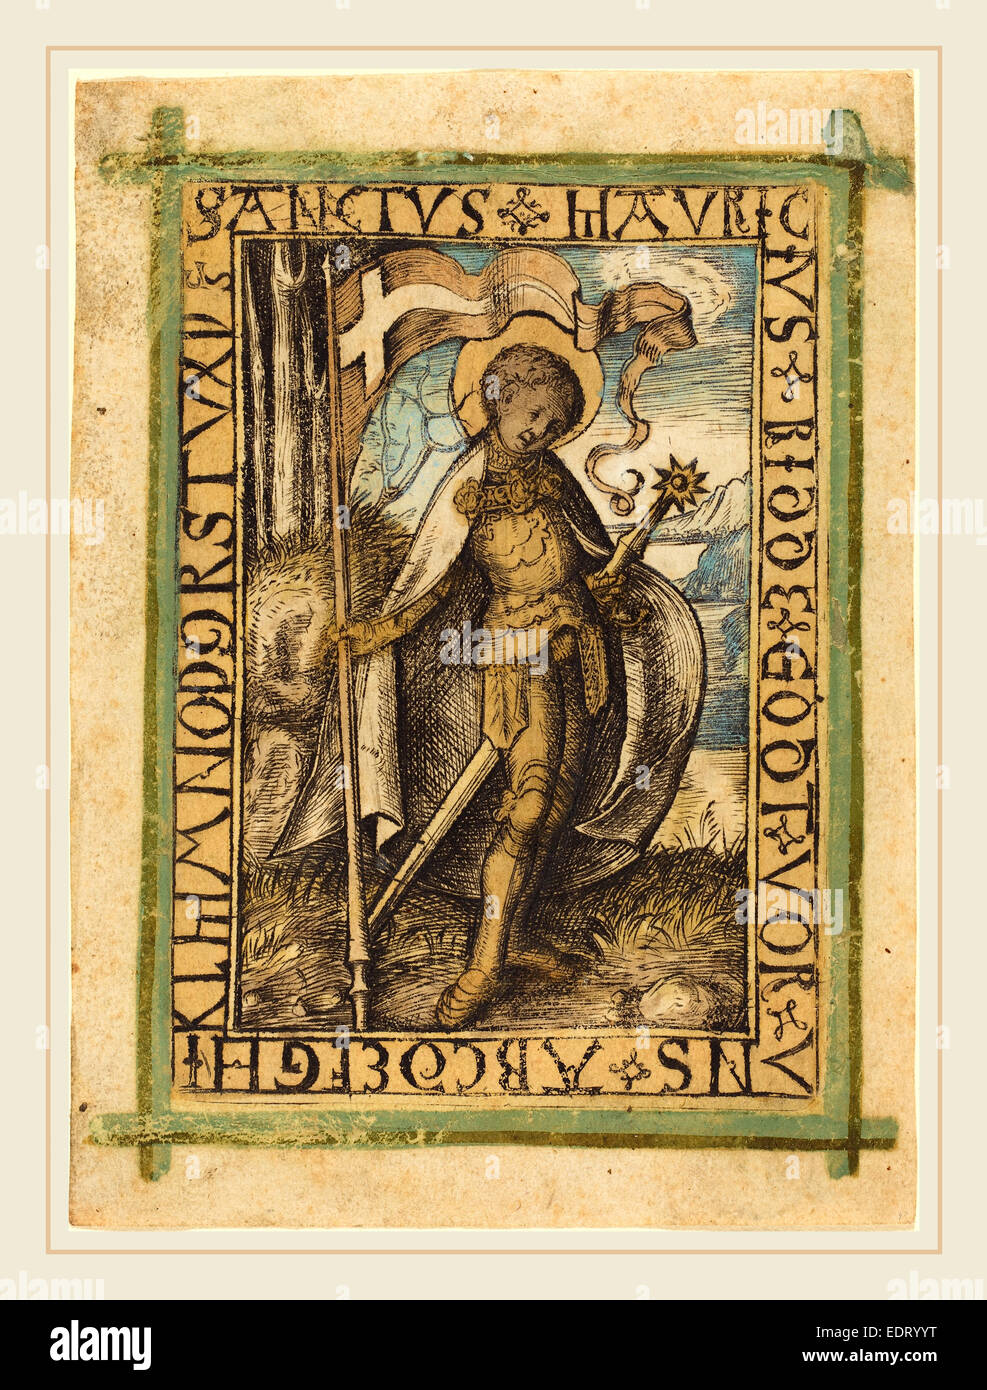 L'allemand du 15e siècle, Saint Maurice, ch. 1480-1490, gravure, colorées à la main Banque D'Images